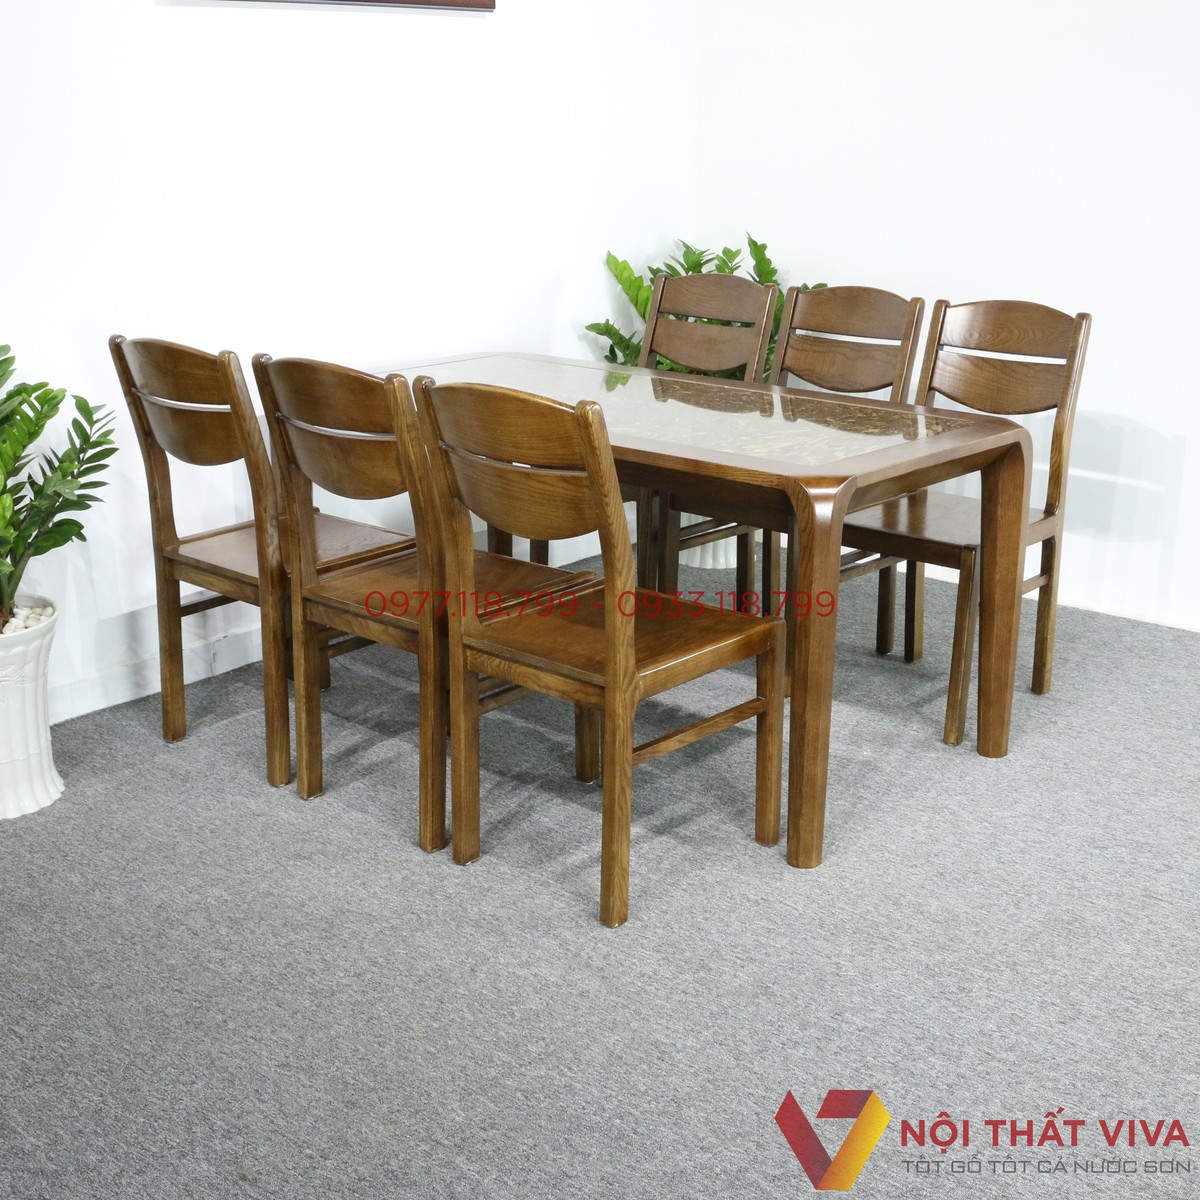 Mẹo chọn bộ bàn ăn 6 ghế phù hợp nhất cho gia đình - Nội thất Viva